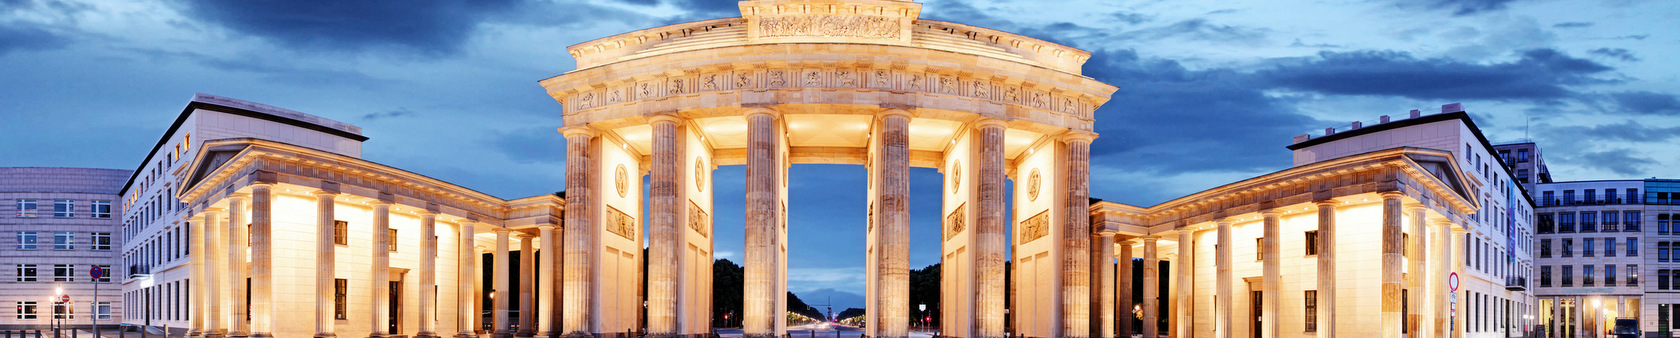 Berlin - niesamowite miasto do poznawania języka niemieckiego